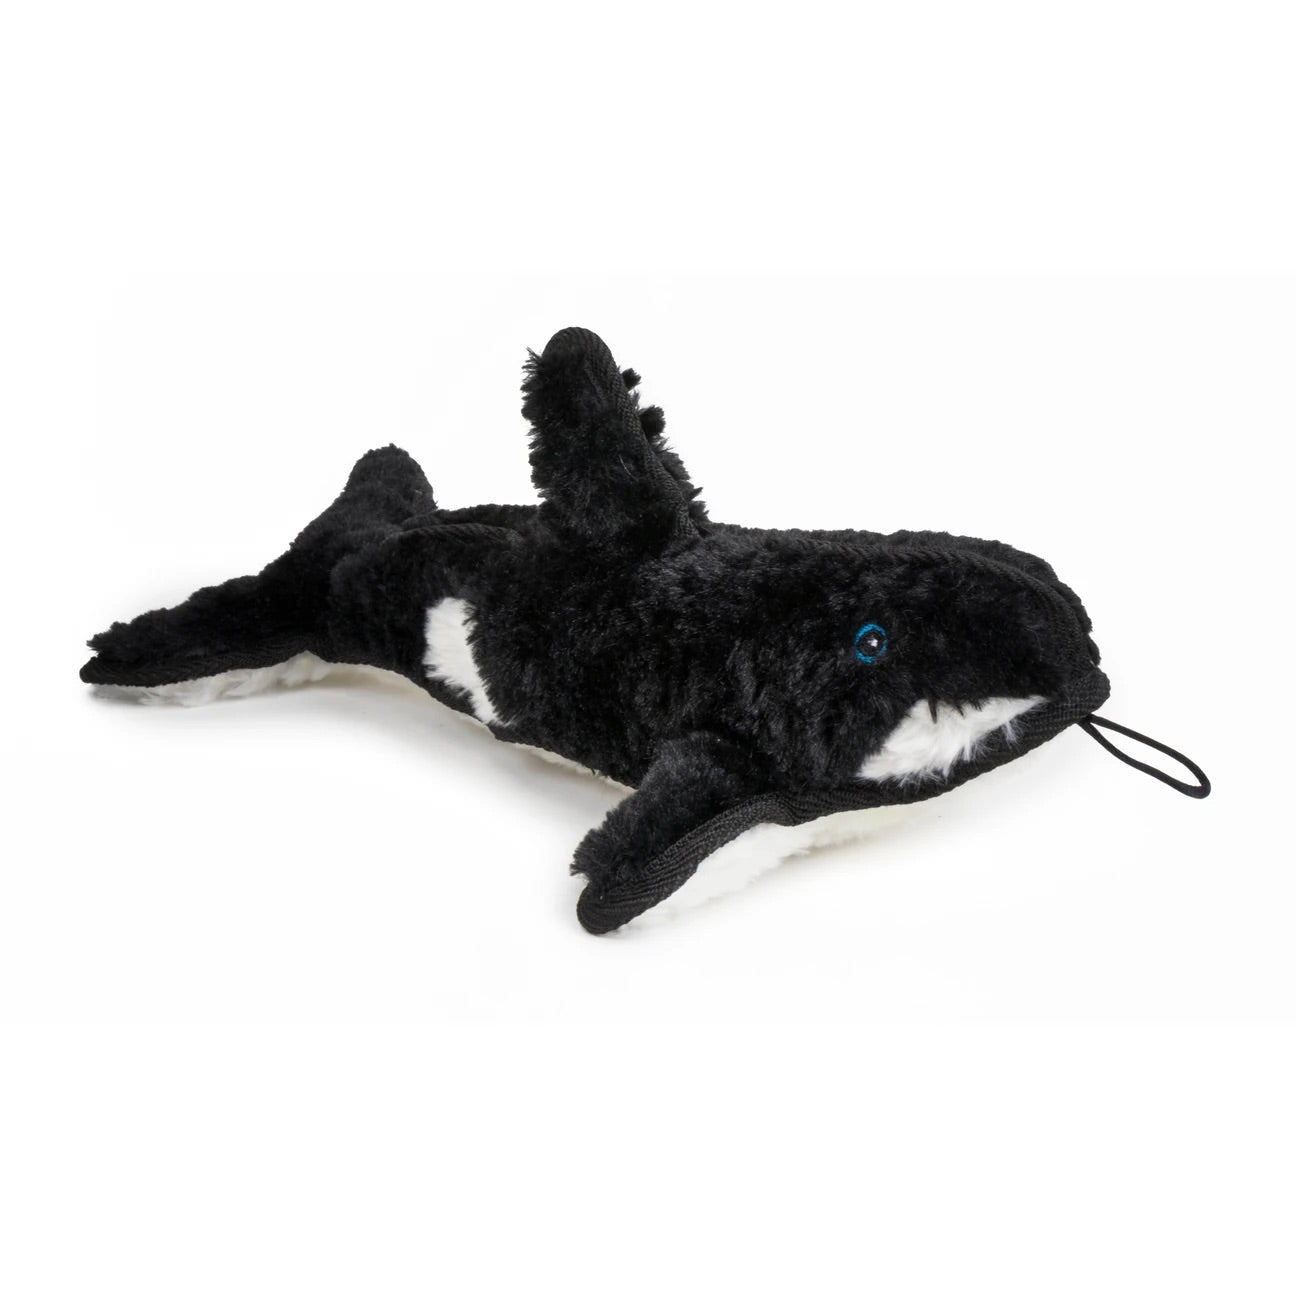 Ruffian Killer Whale - Dog toy